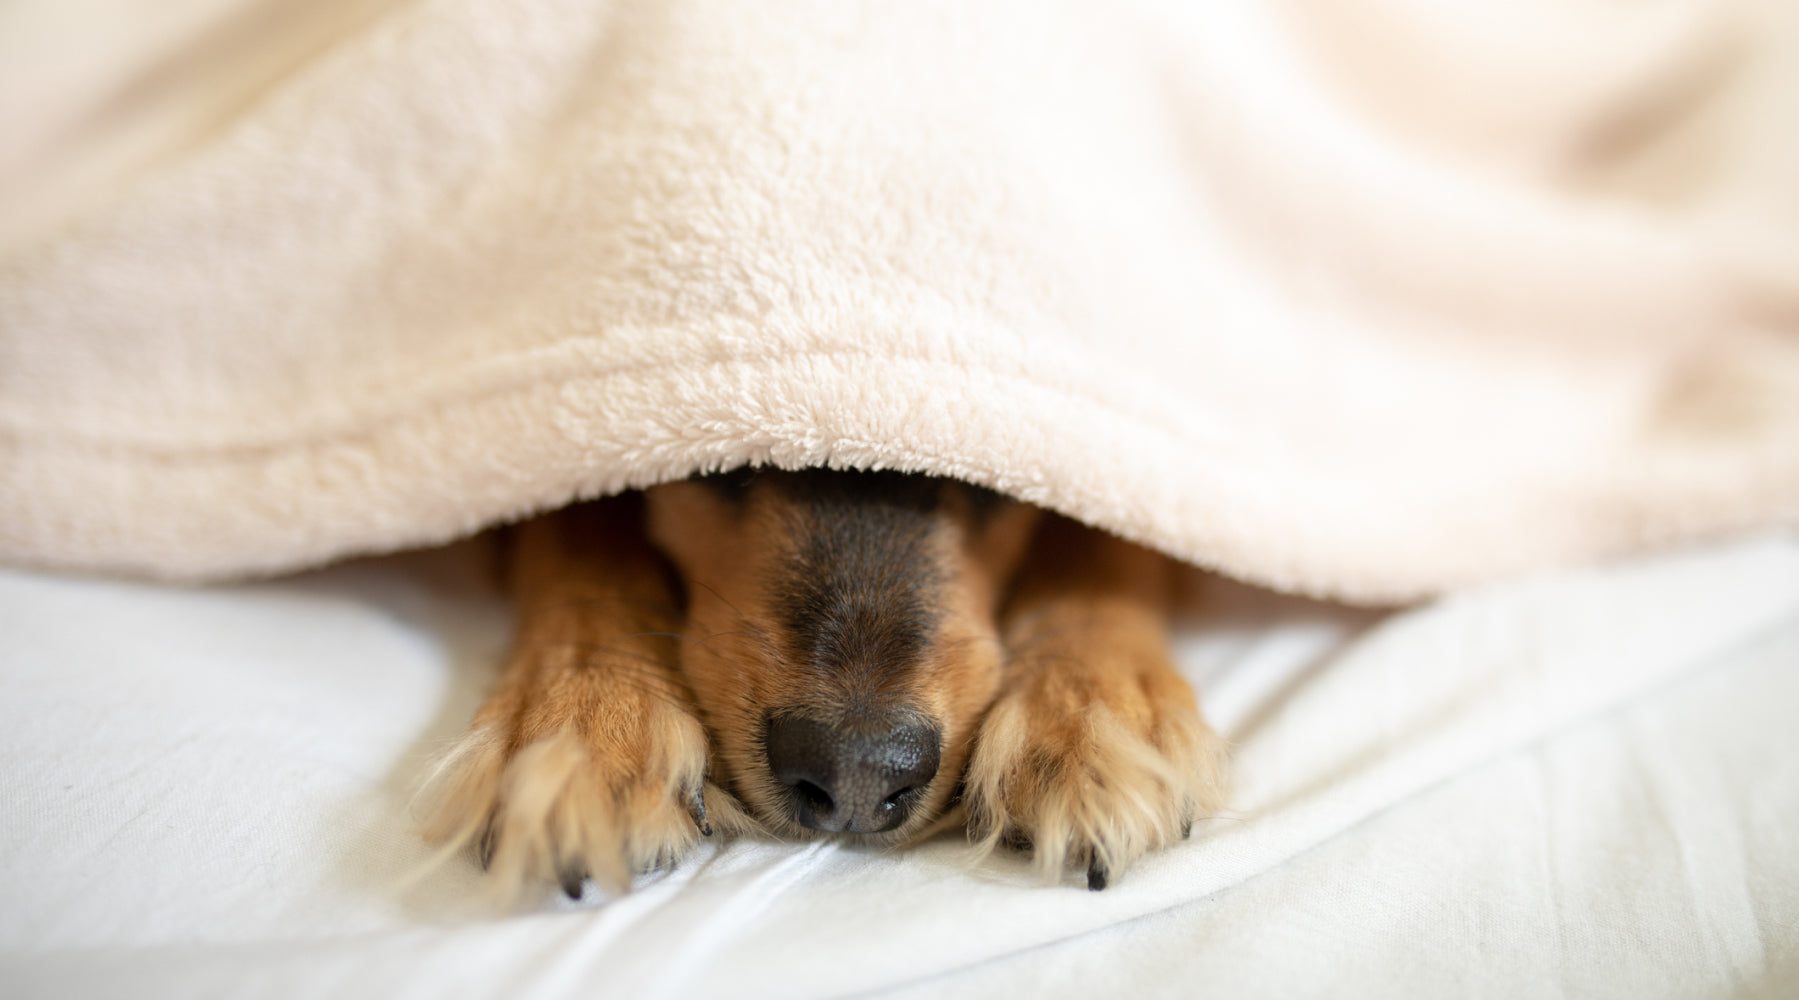 Cute dog snuggled under blanket